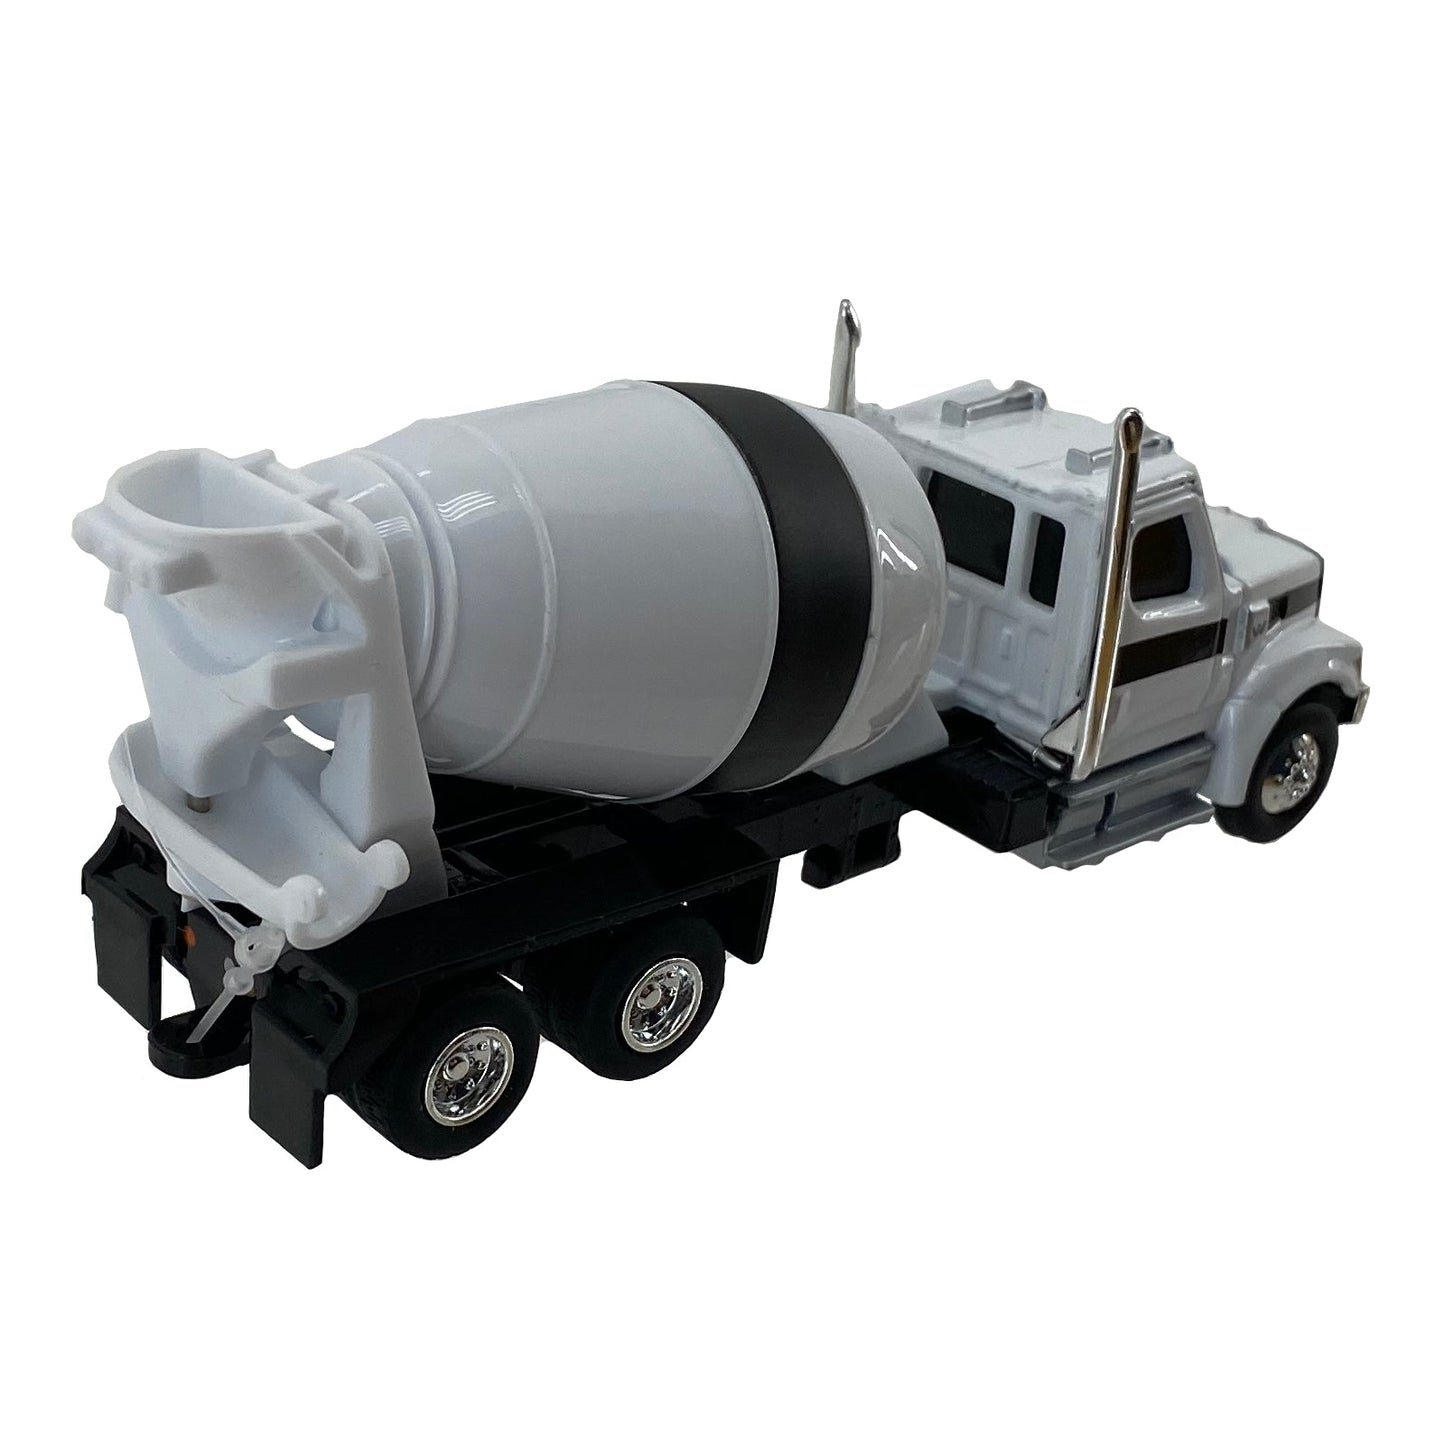 ERTL 1/64 Scale Western Star Cement Truck - LP81119